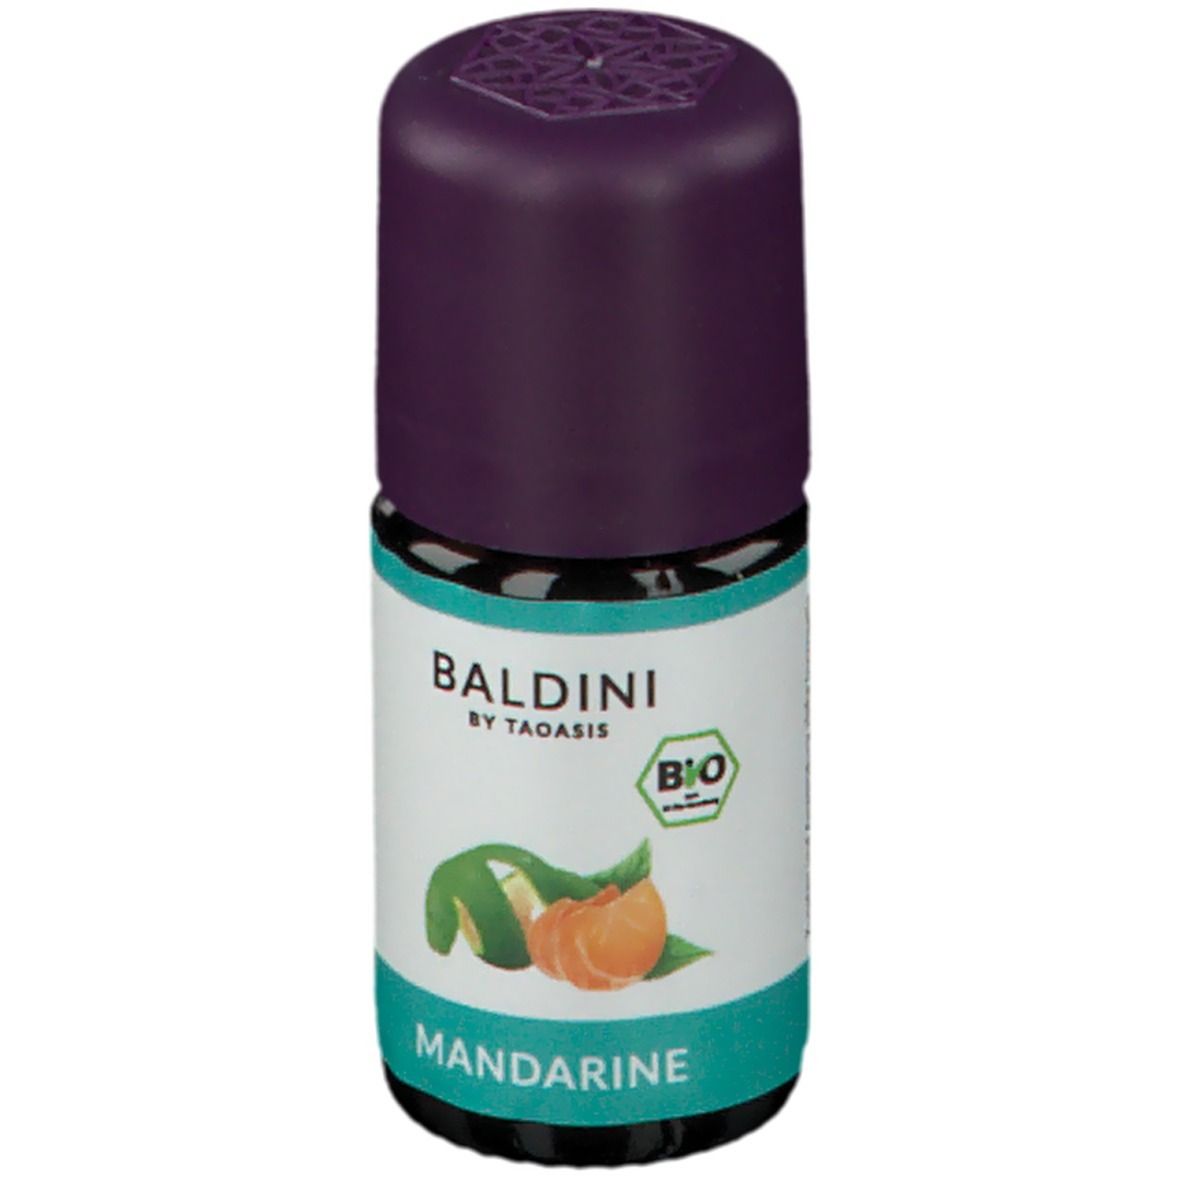 BALDINI BY TAOASIS Mandarine Aromaöl